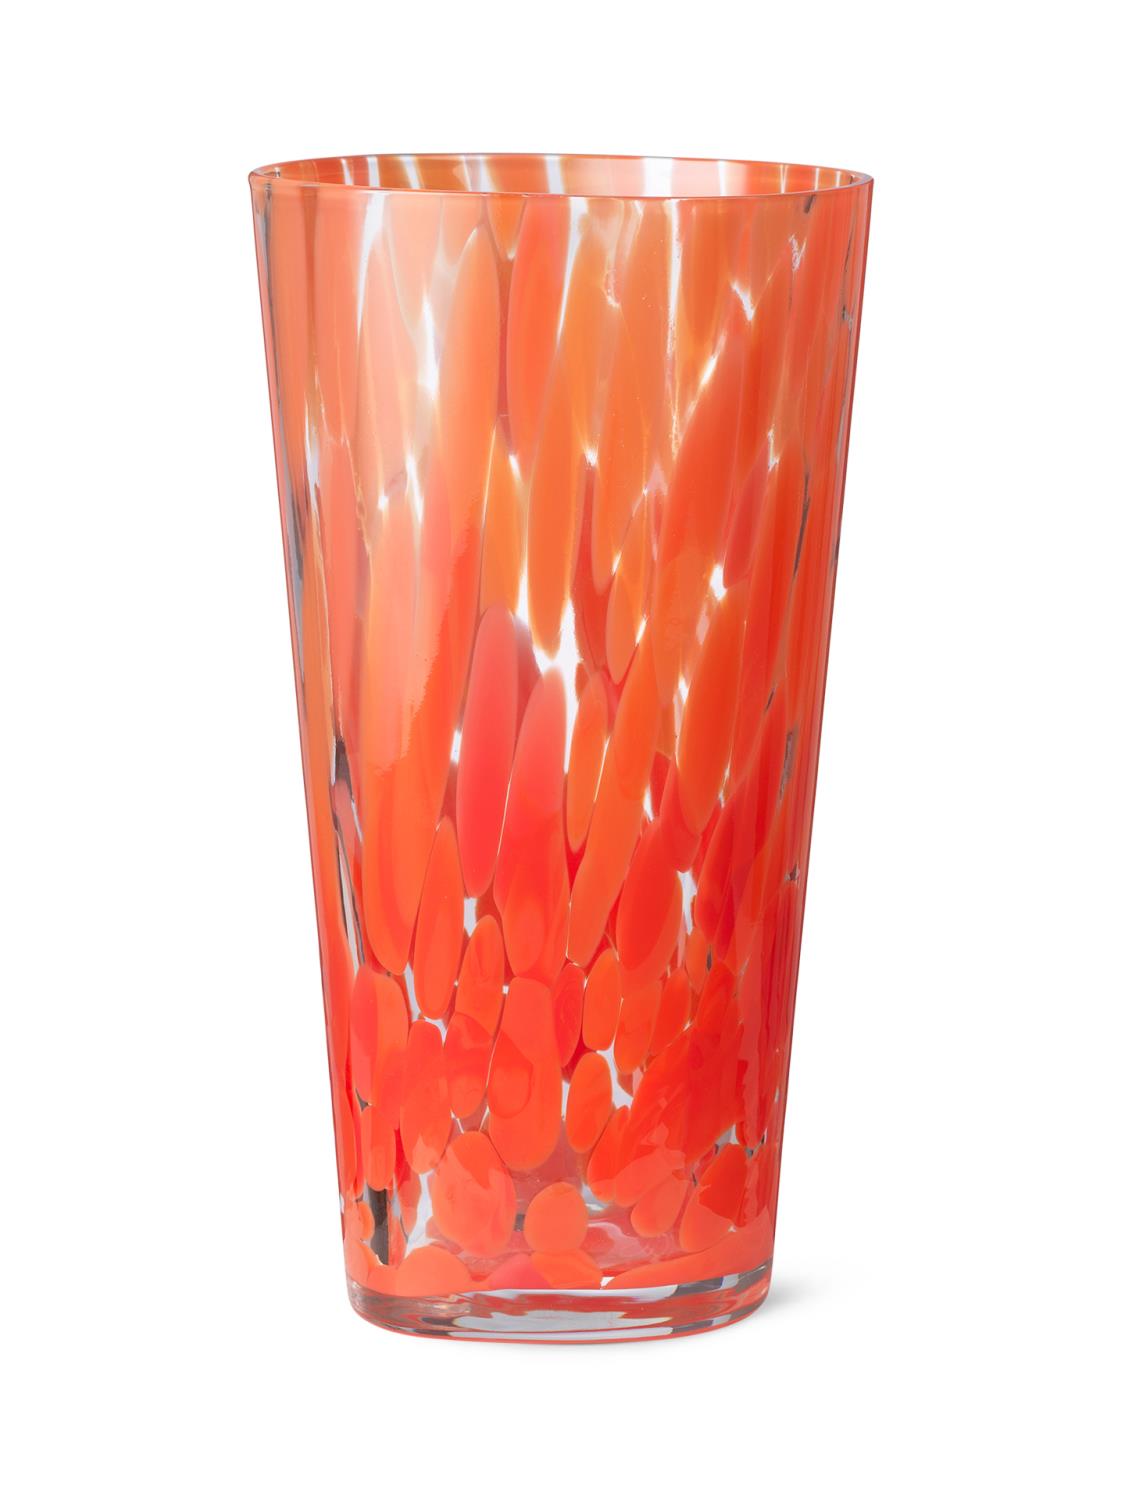 Ferm Living - Casca Vase - Poppy Red